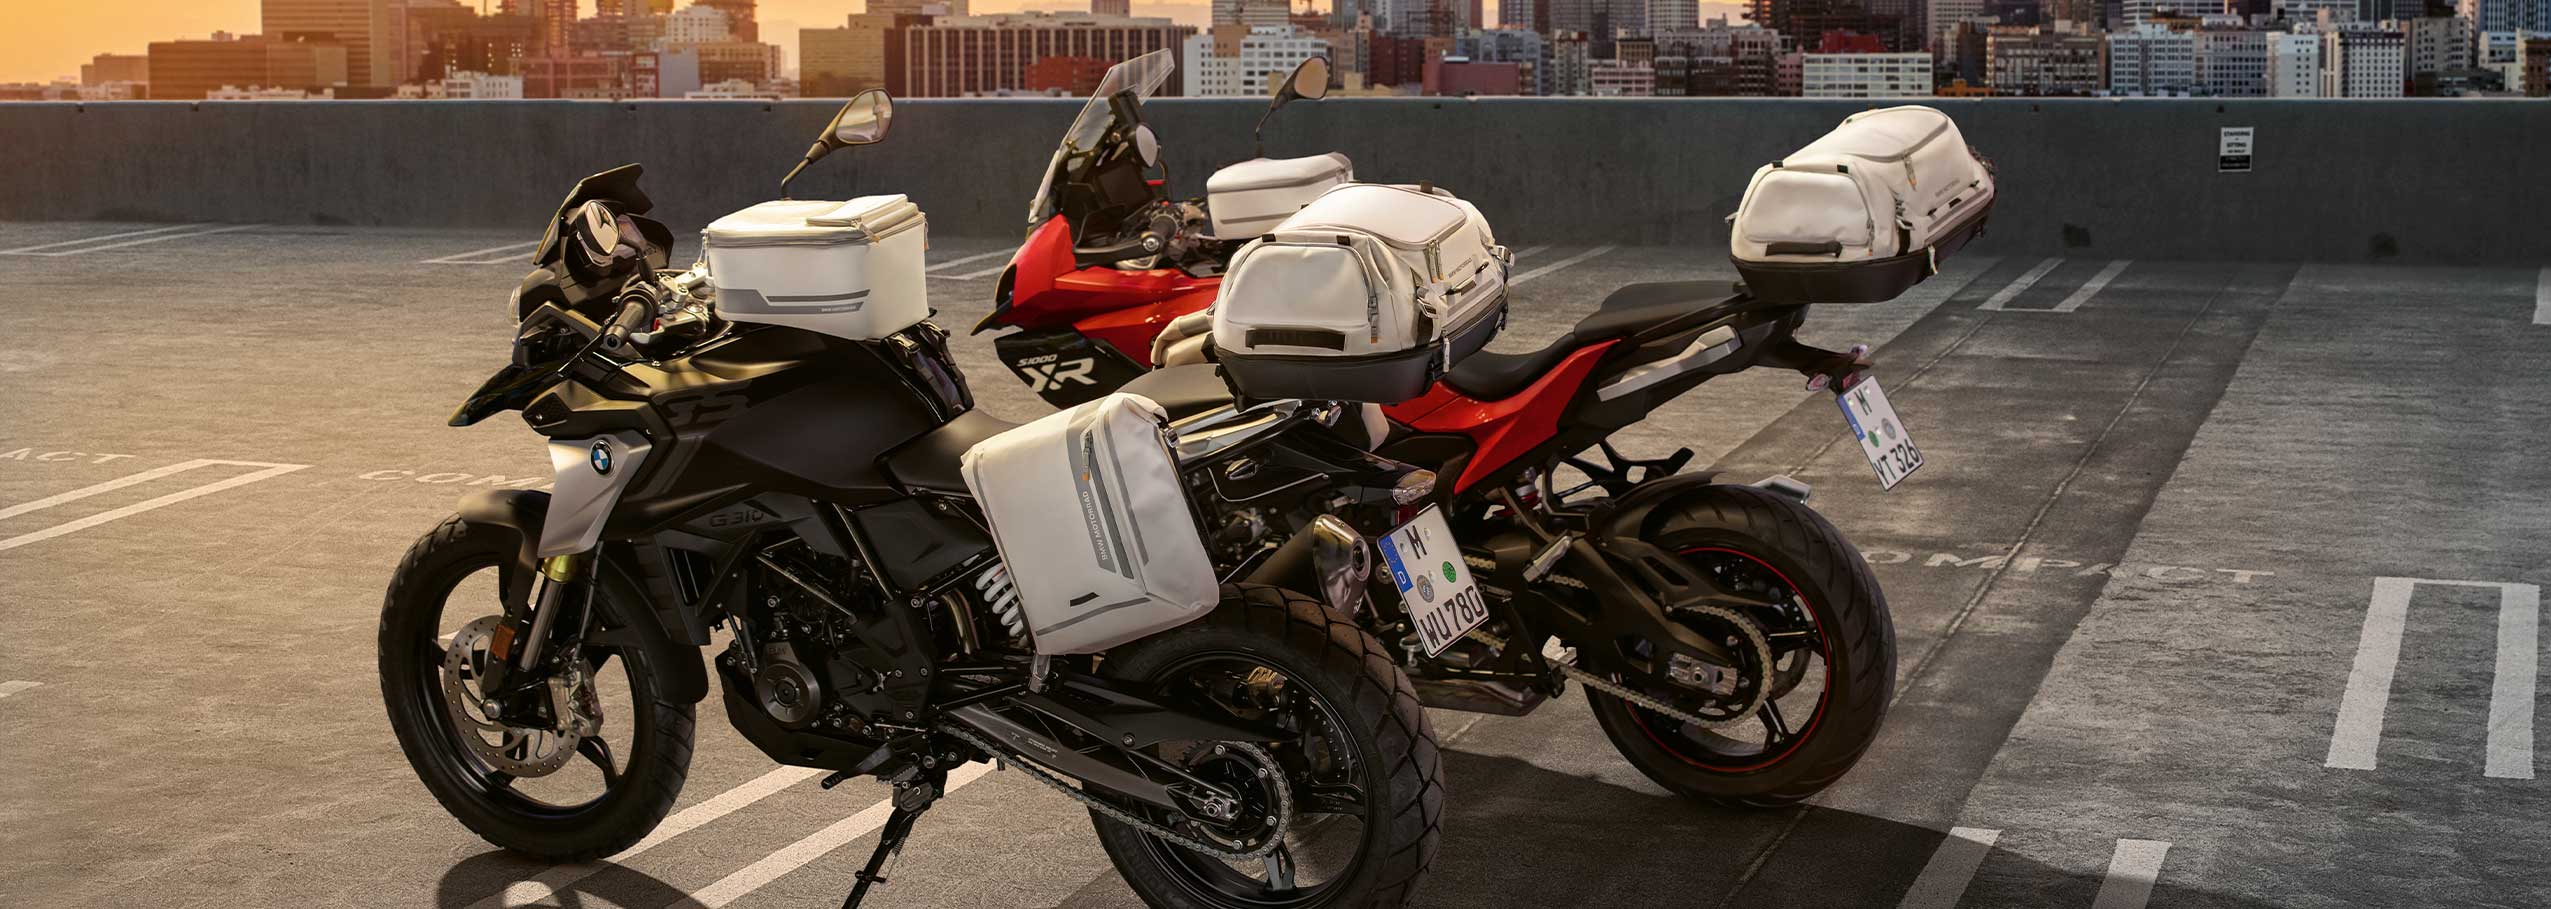 Maleta Moto Tipo Bmw Gs Vario Motorrad Impermeable Viaje